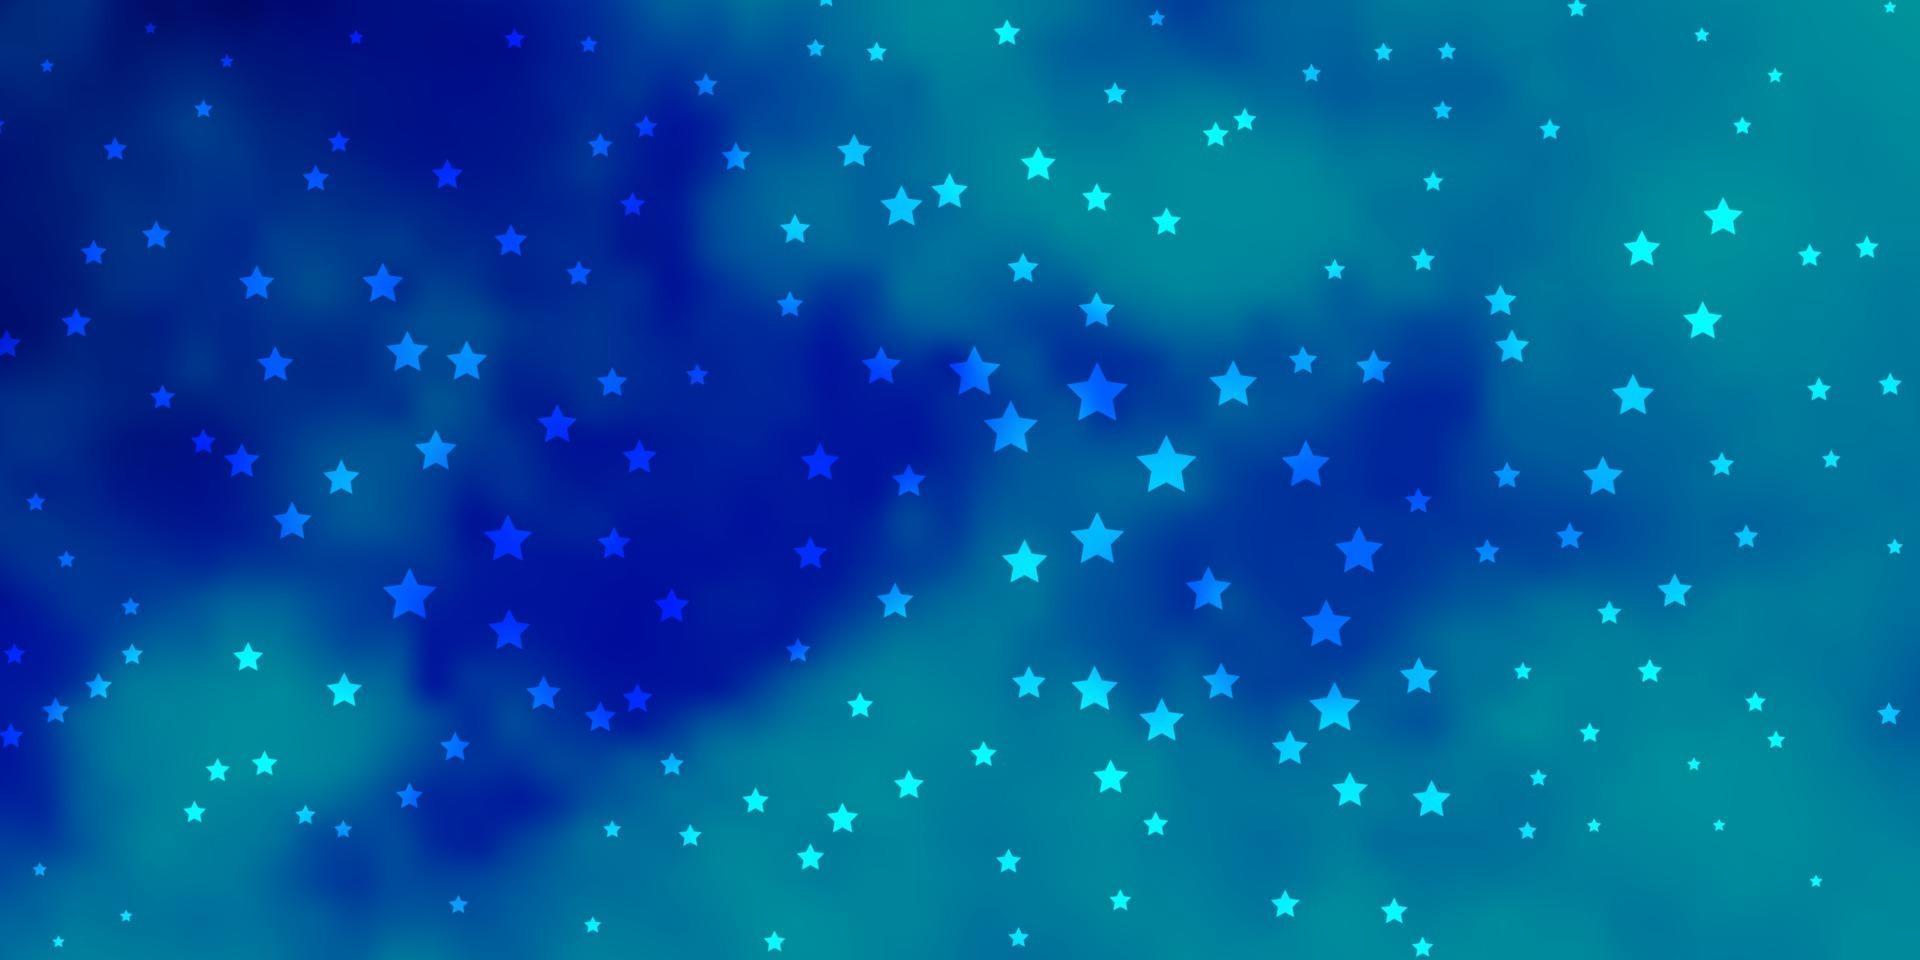 sfondo vettoriale blu scuro con stelle piccole e grandi.